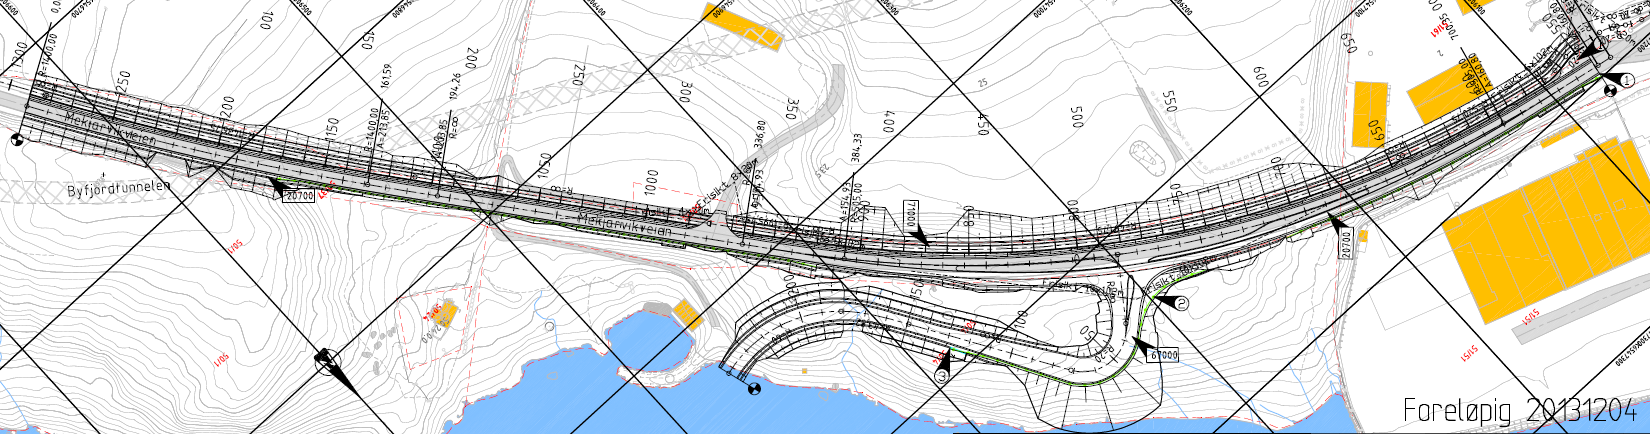 E39 ROGFAST, PLANBESKRIVELSE MEKJARVIK SØR 51 6.5 Teknisk infrastruktur 6.5.1 Veg Figur 6-2 Illustrasjon av ny atkomstveg inn til planlagt industriområde.